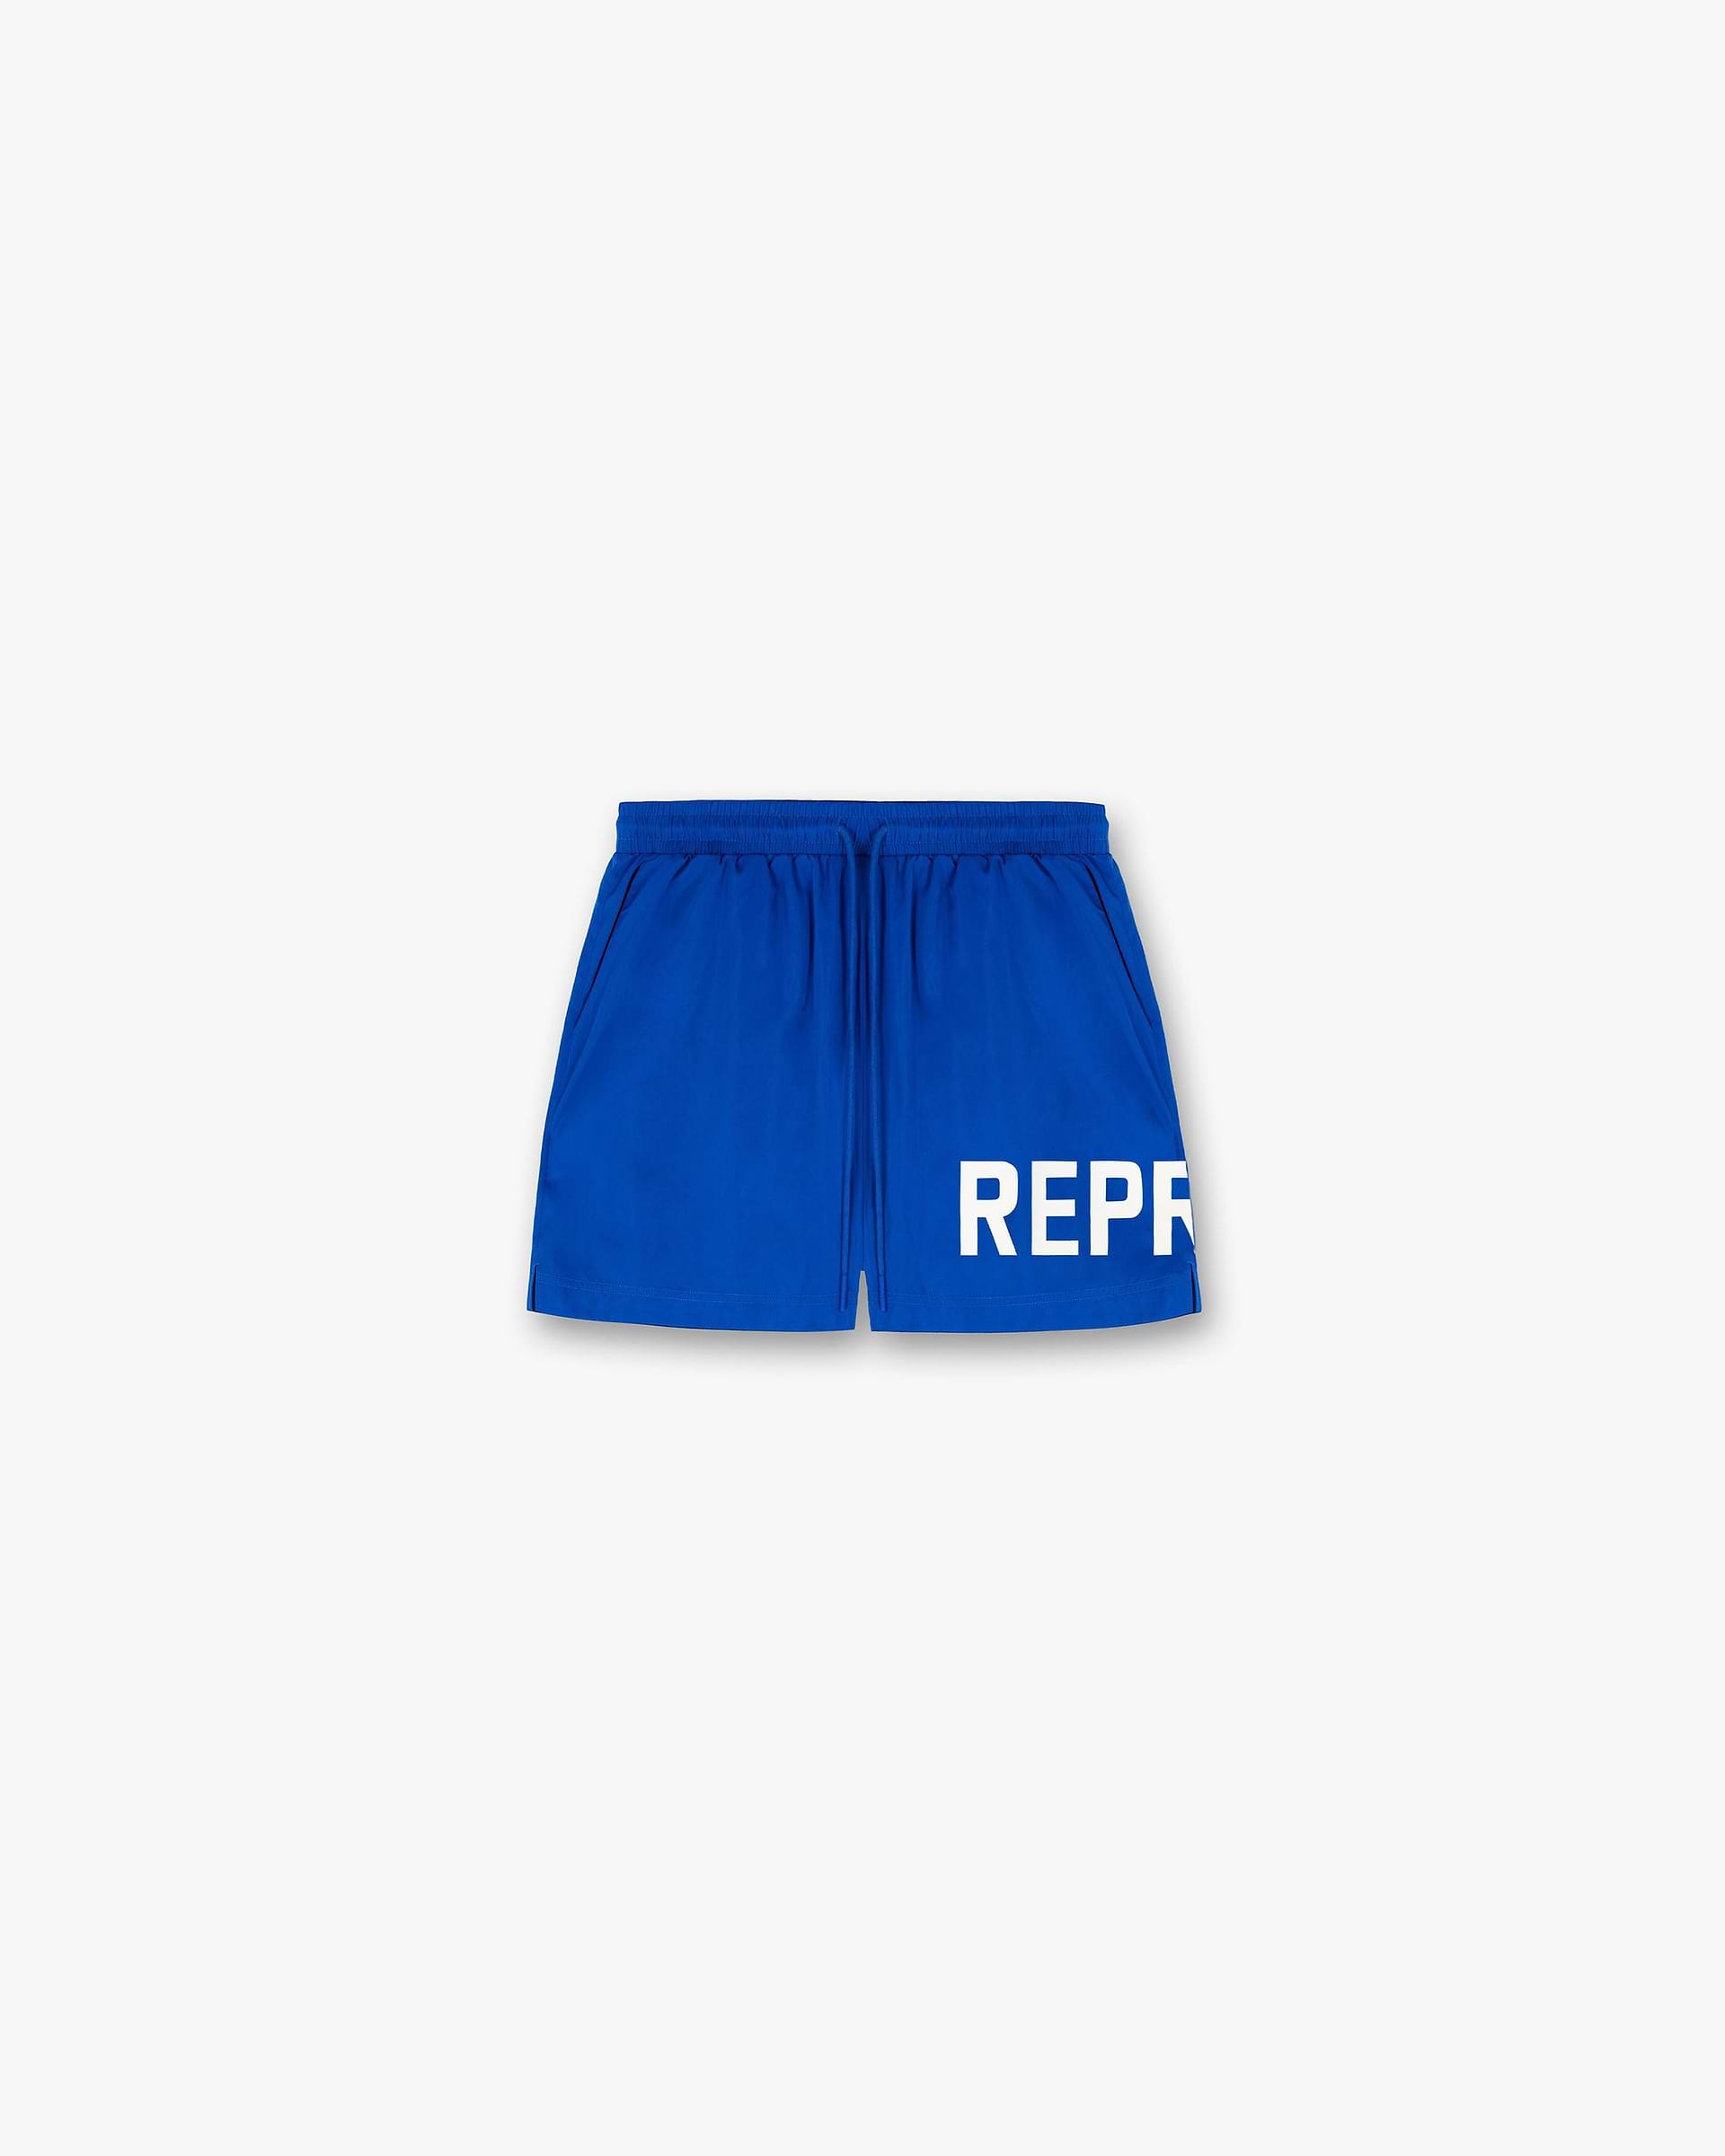 Swim Shorts | Cobalt Shorts SC23 | Represent Clo